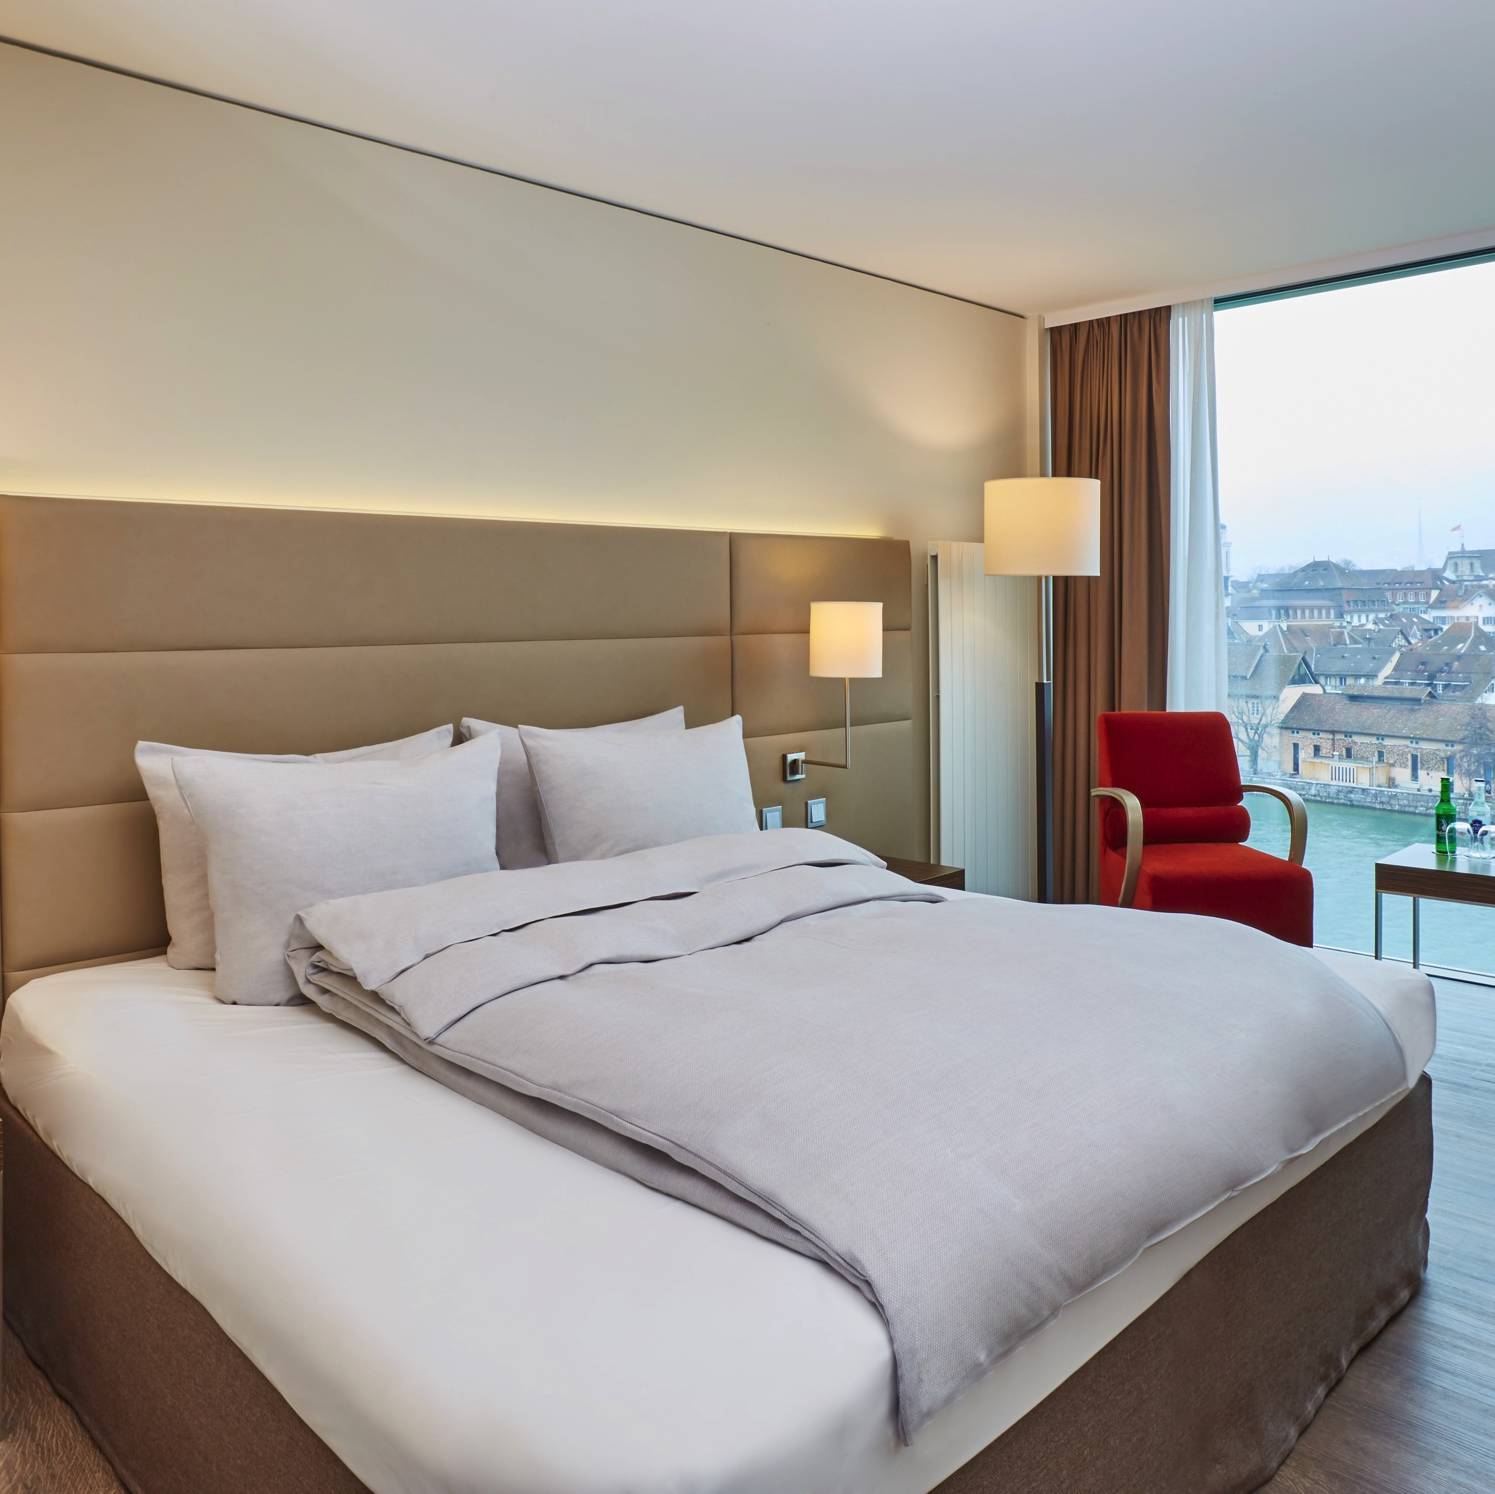 Garanzia del miglior prezzo - H4 Hotel Solothurn